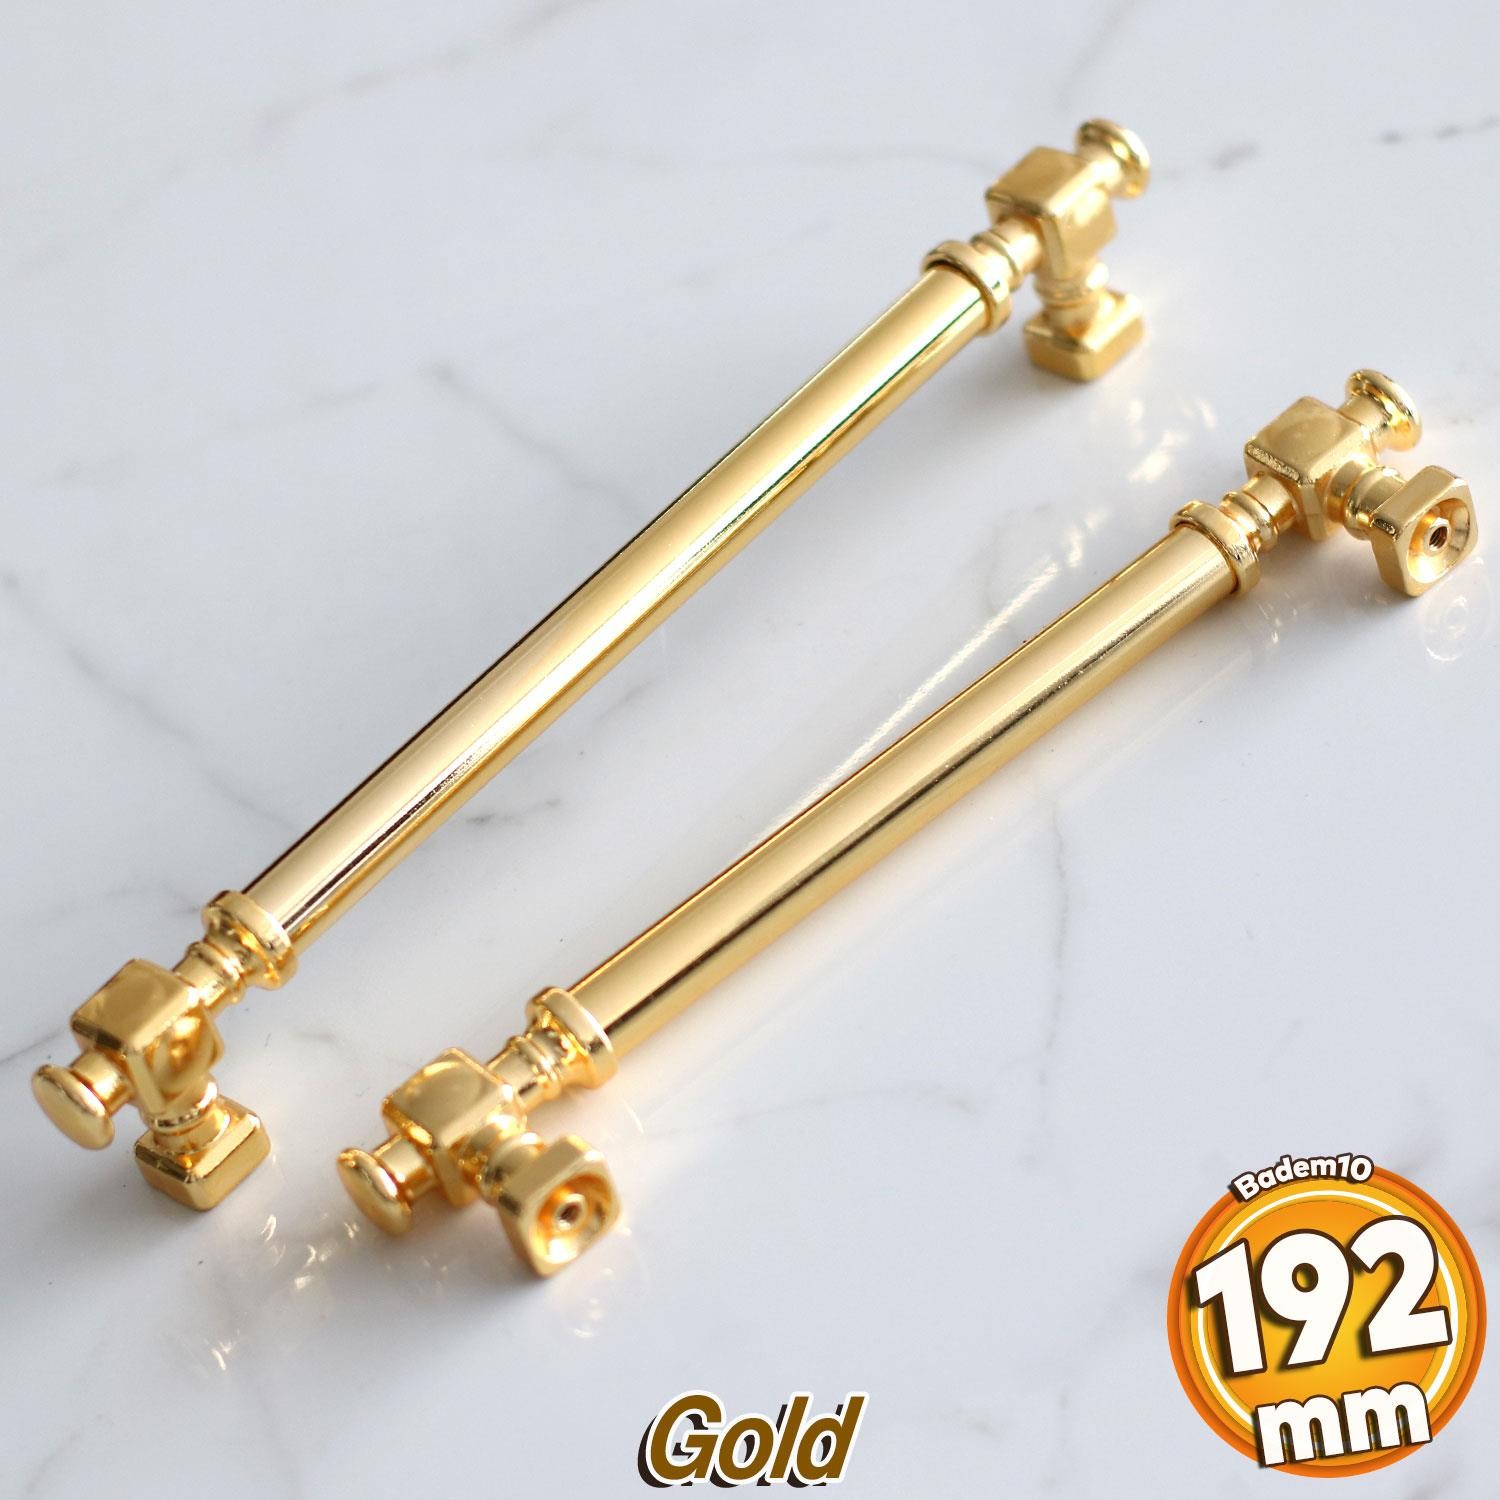 Talas Gold Altın Düz Metal Kulp 192 mm 19.2 cm Mobilya Mutfak Çekmece Dolabı Dolap Kulpları Kulb